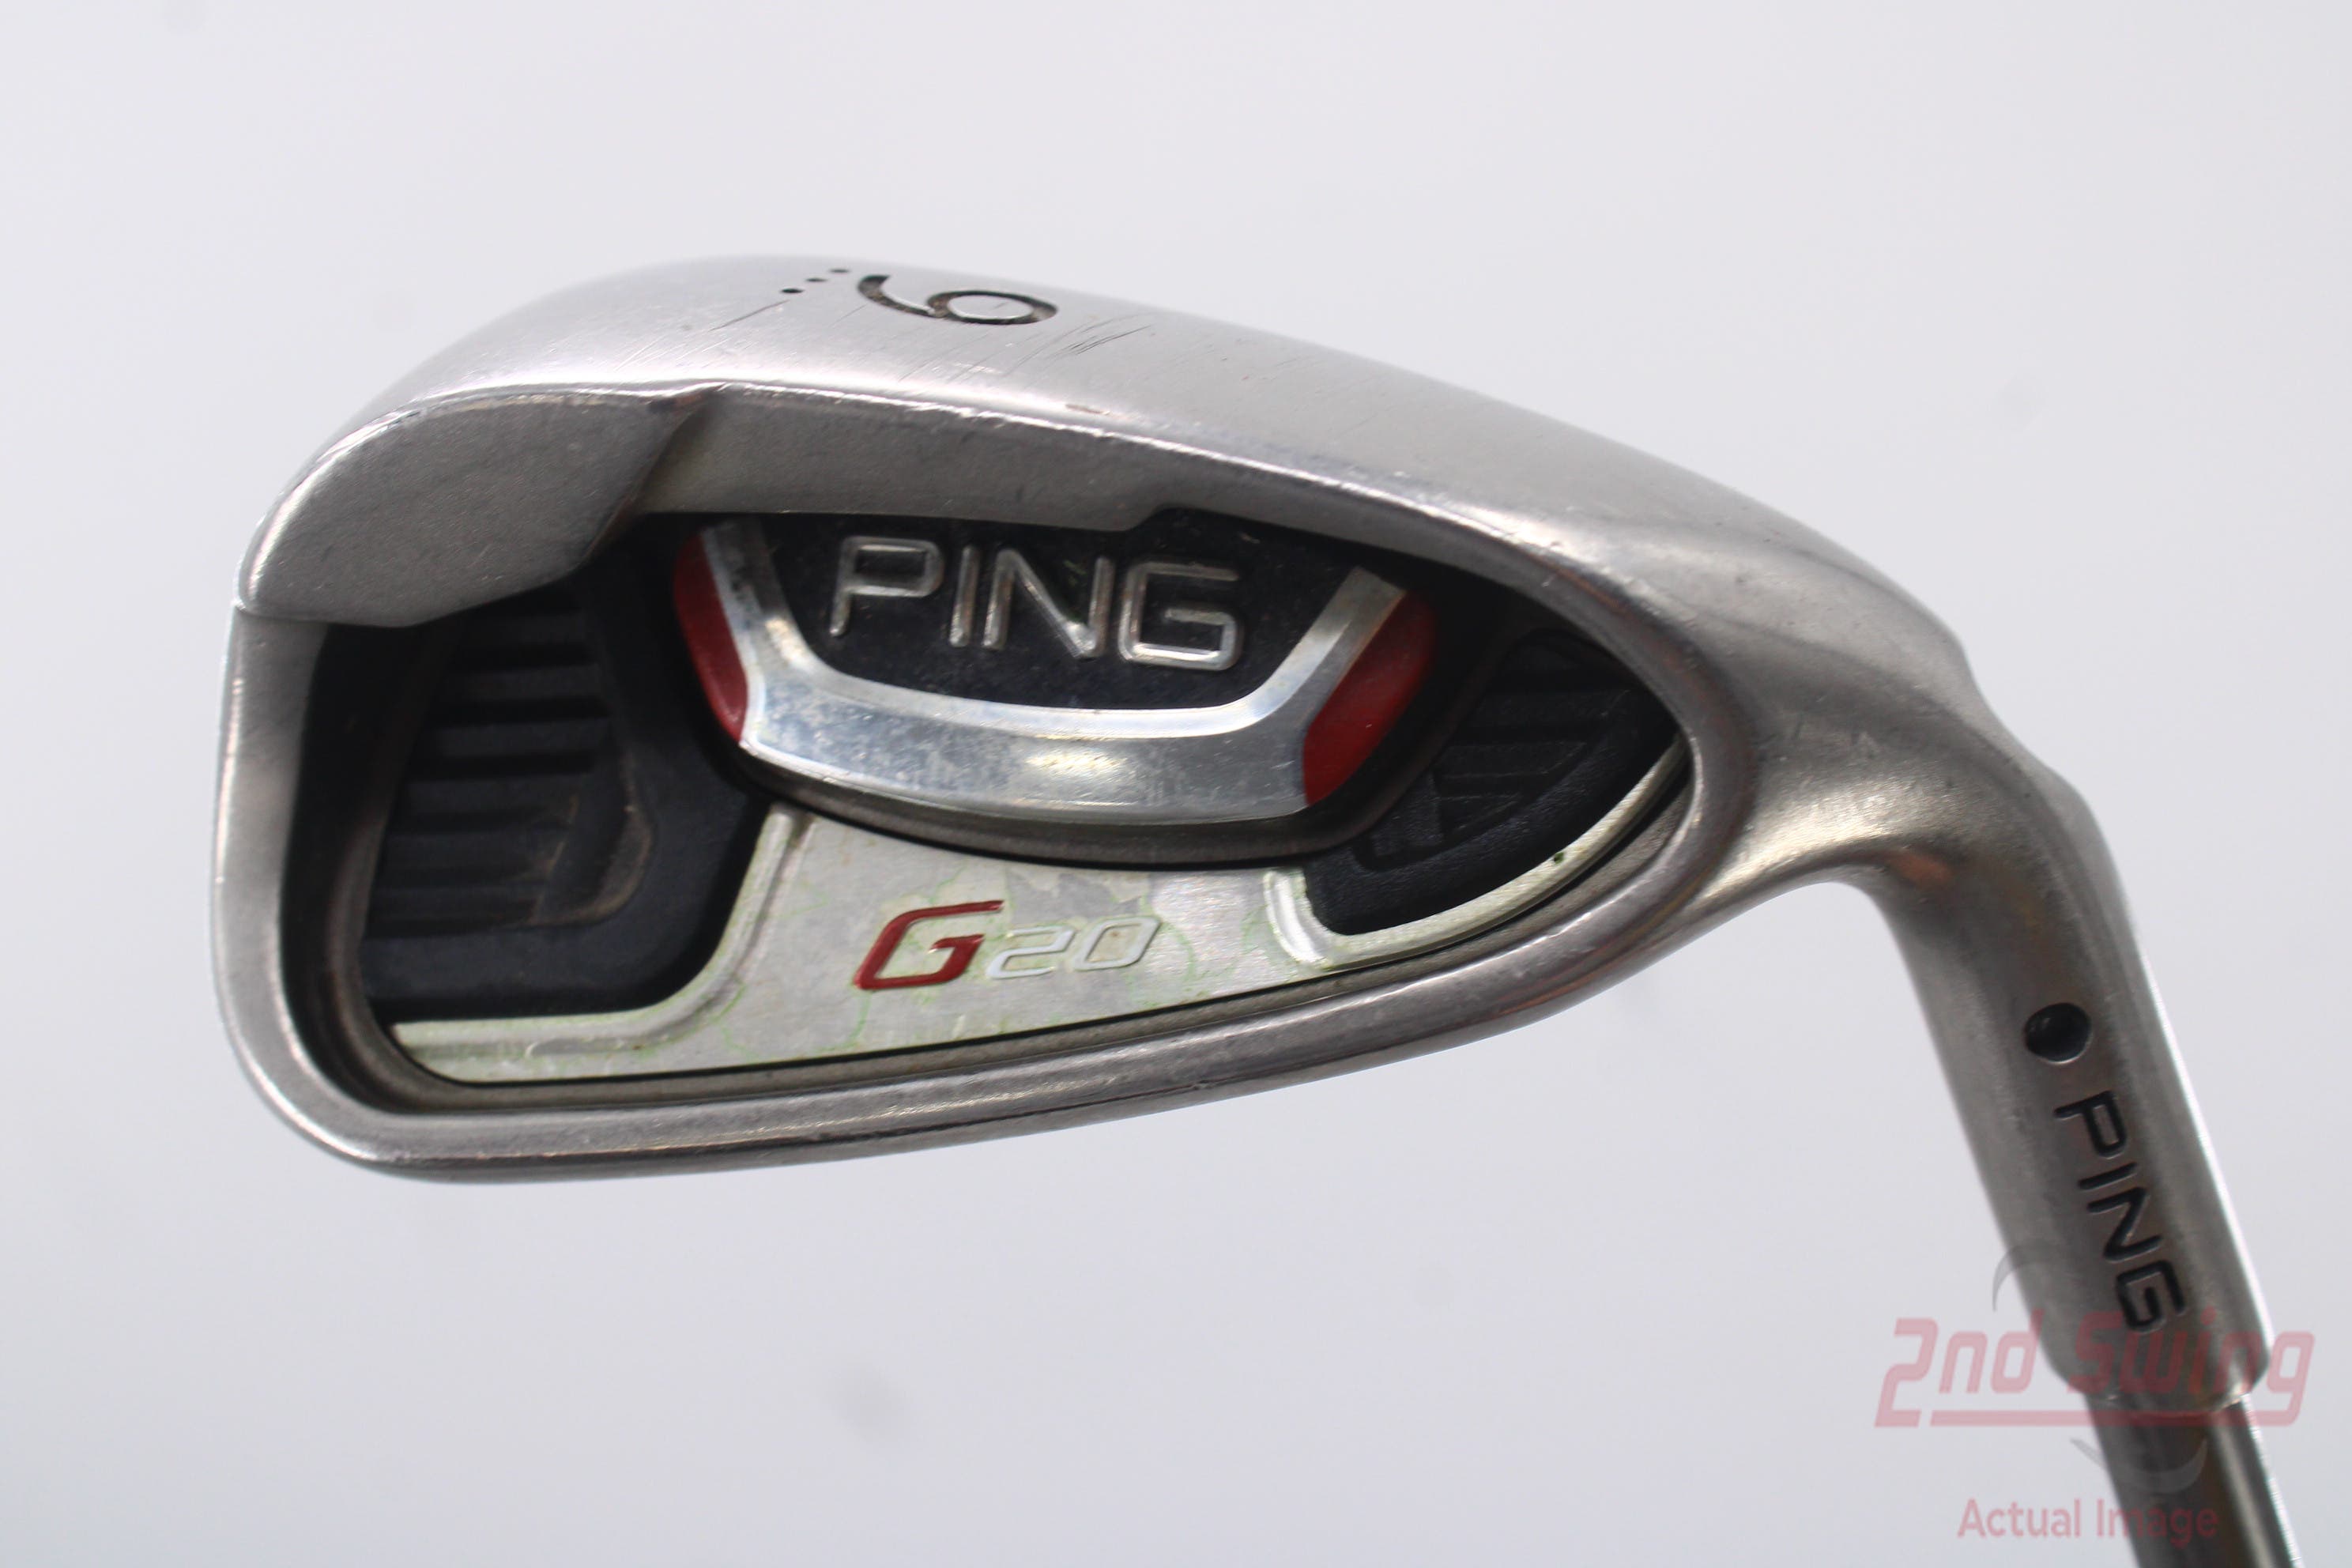 Ping G20 Single Iron | 2nd Swing Golf